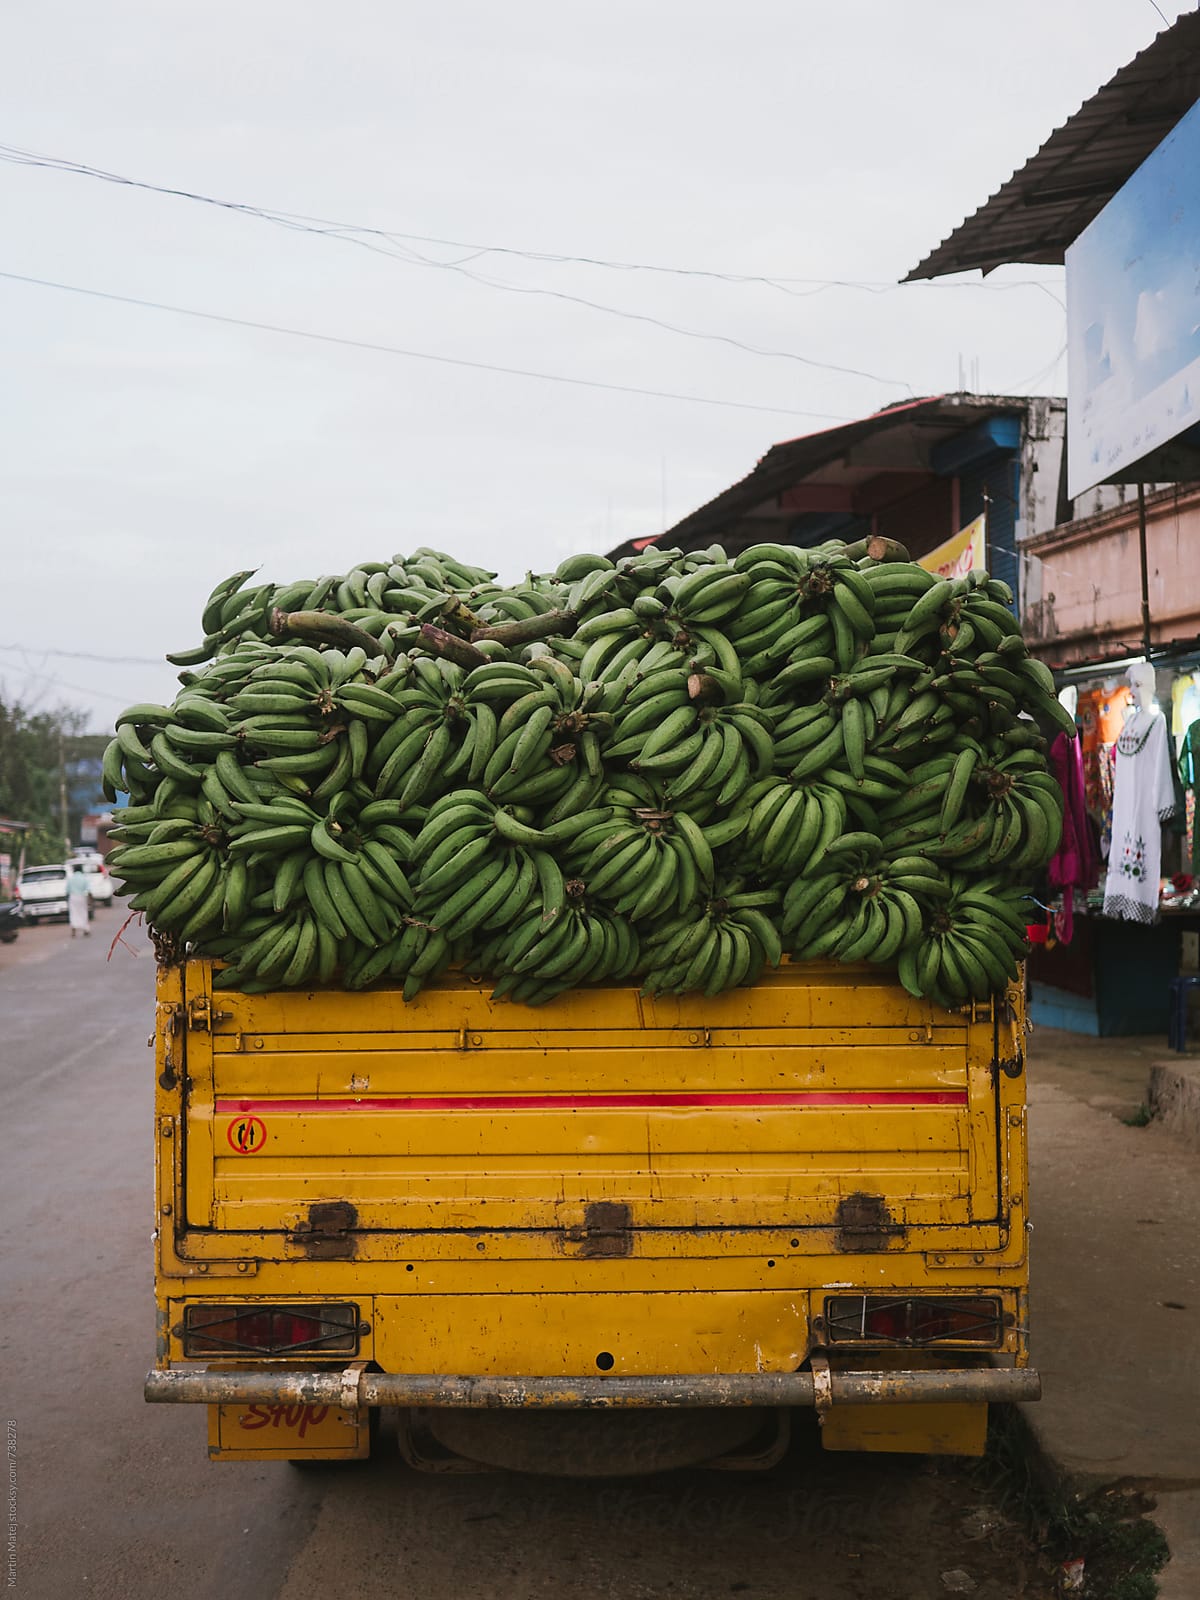 Truck overfull of bananas